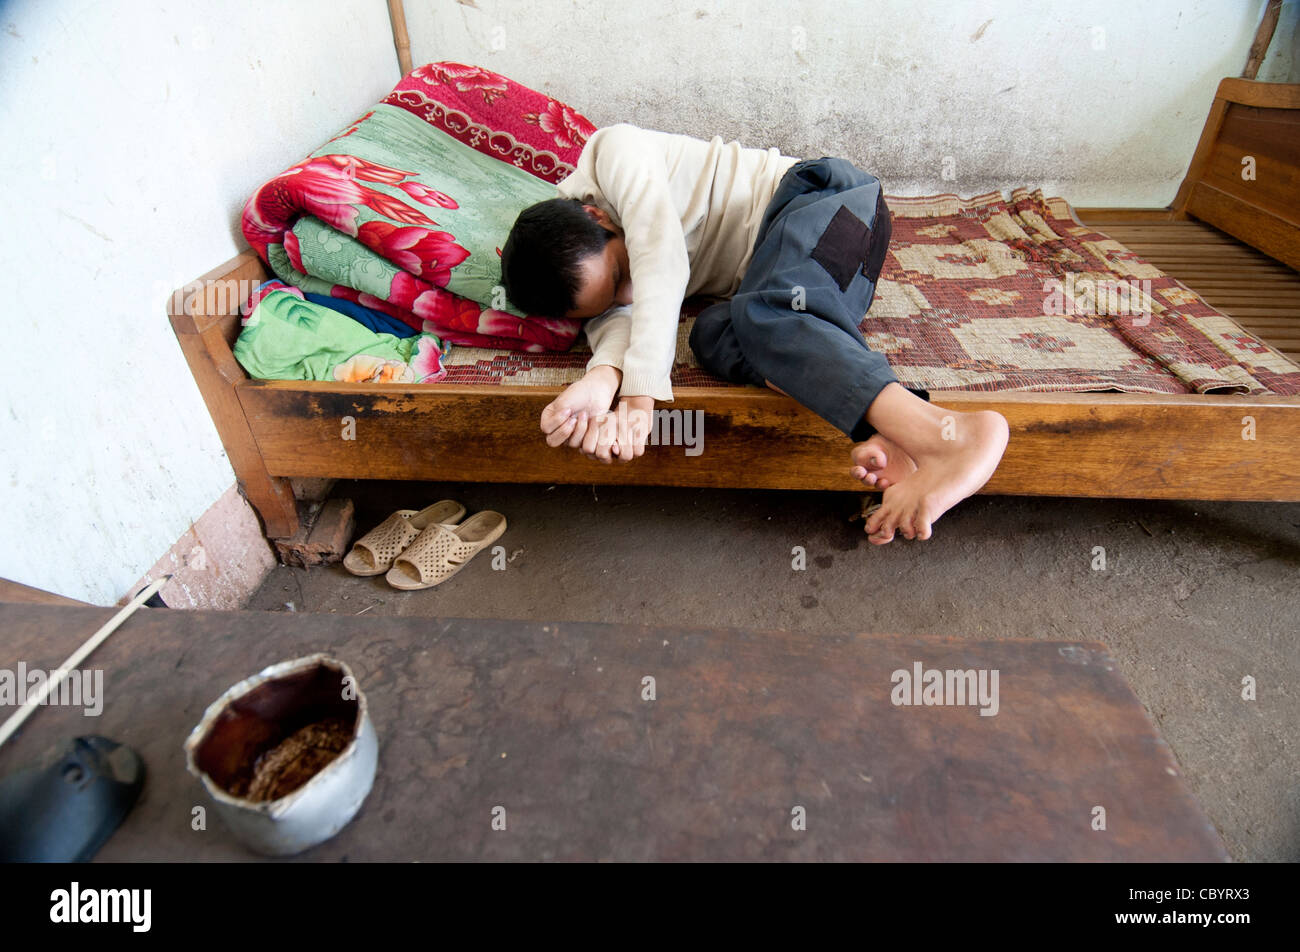 Garçon handicapé de l'adolescent, au Vietnam. Le manque d'oxygène pendant l'accouchement aboutit souvent à de graves handicaps, physique et mentale. Banque D'Images